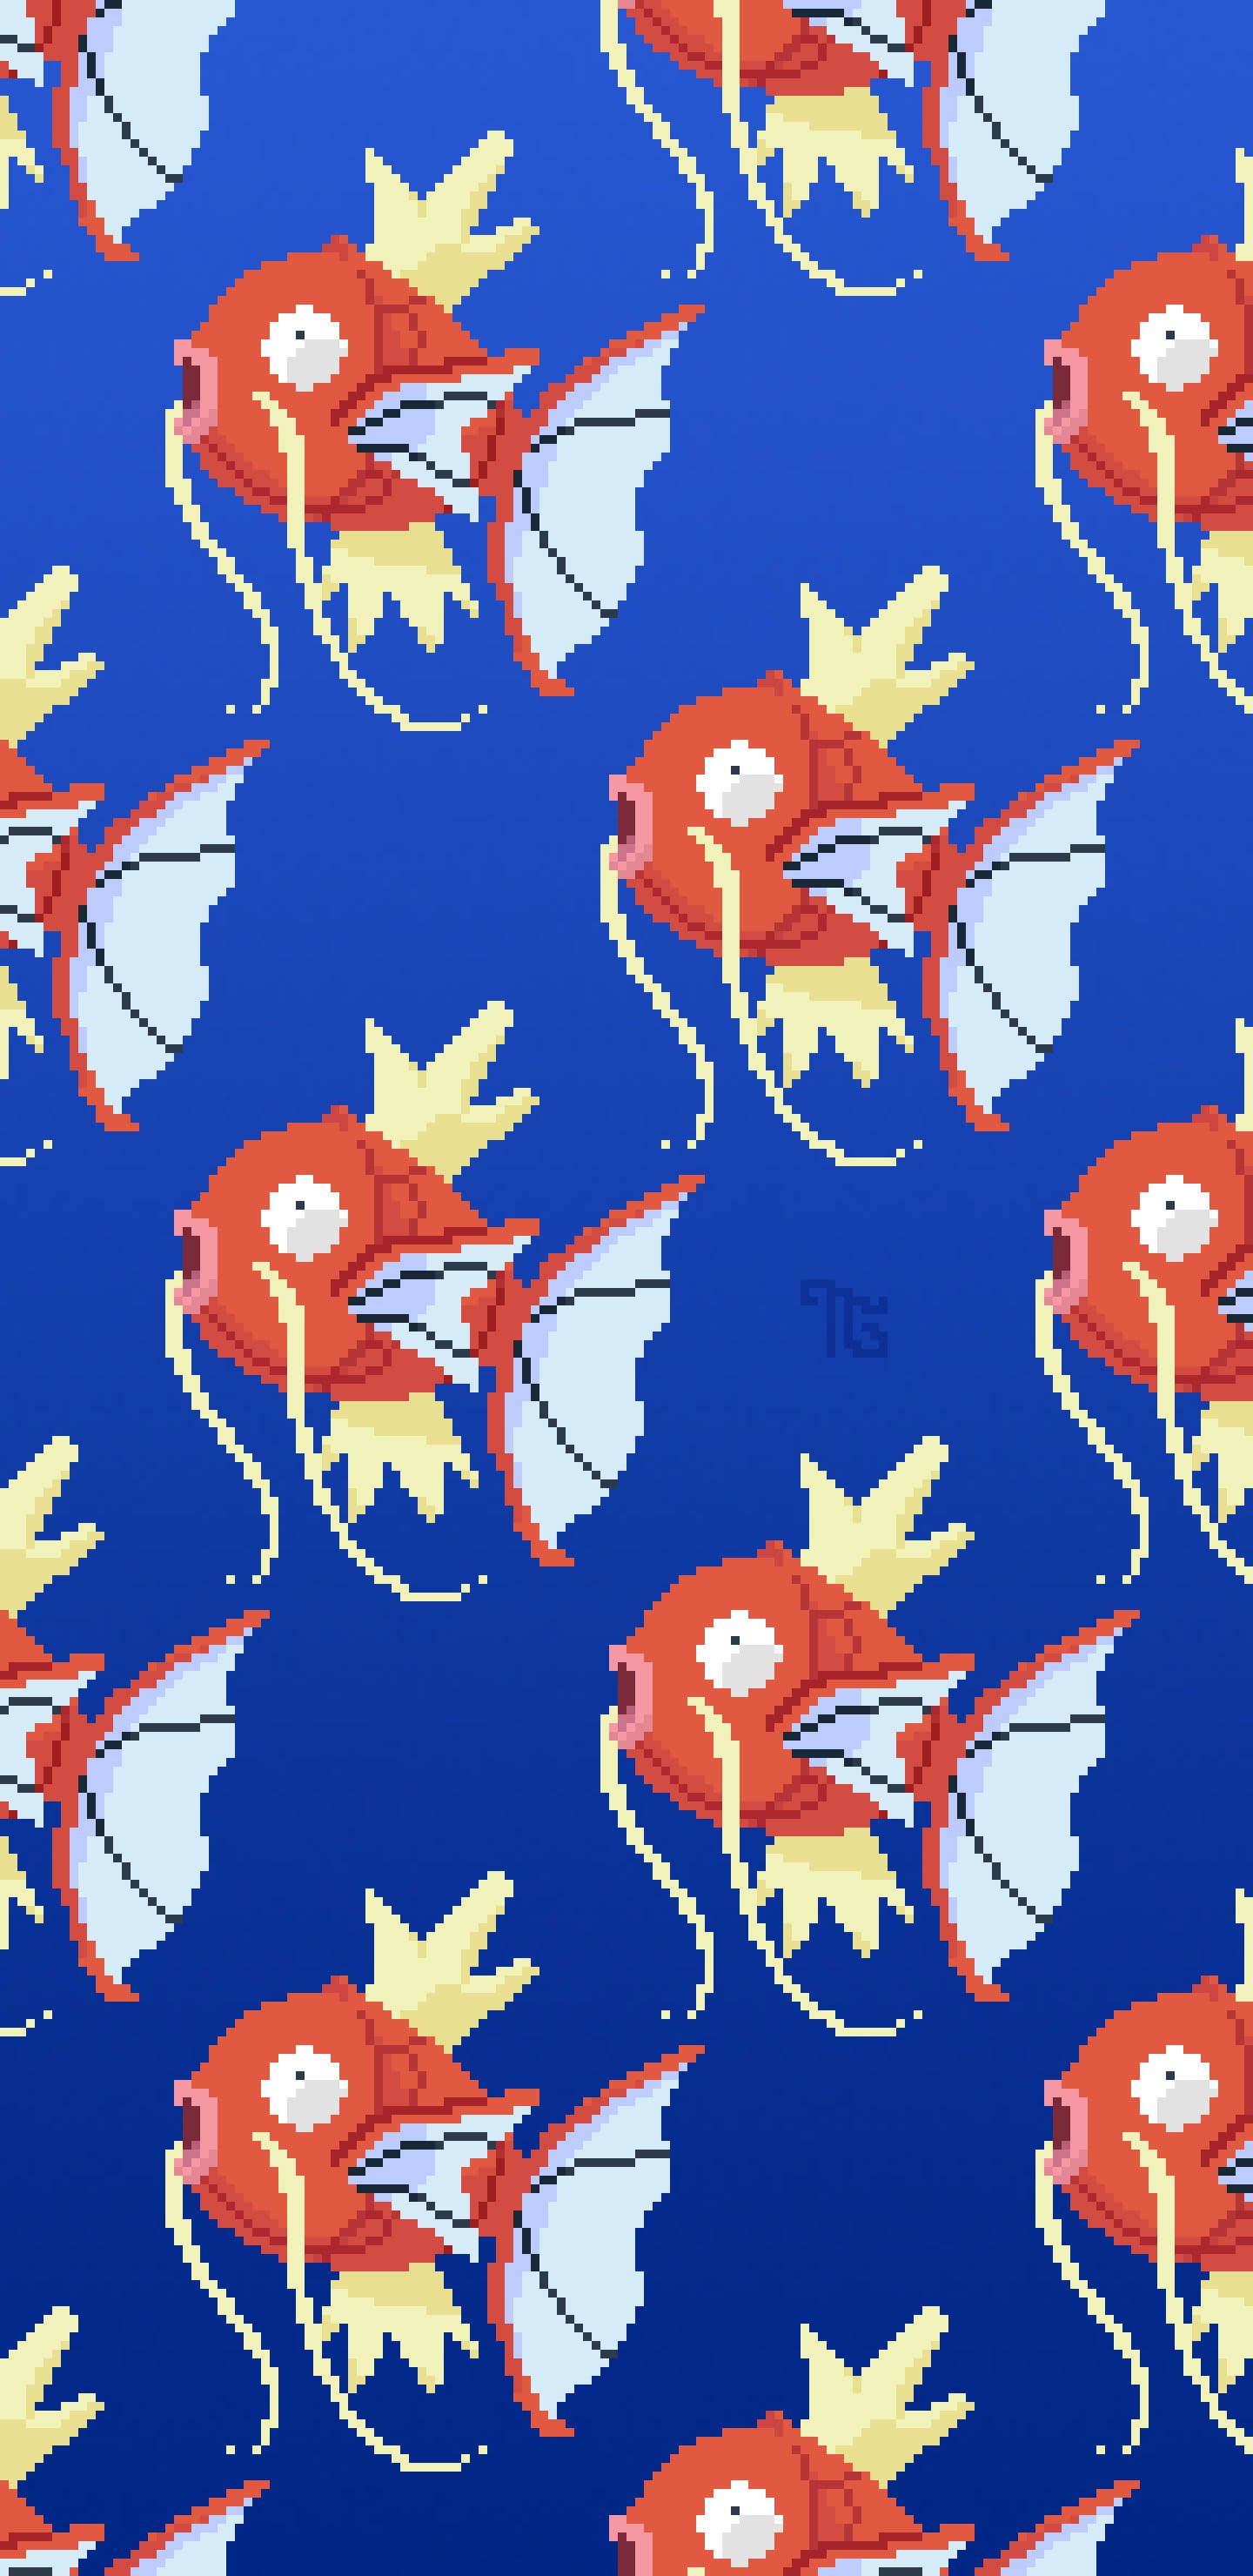 I made a new wallpaper for my phone! 8 bit Magikarp - Pokemon